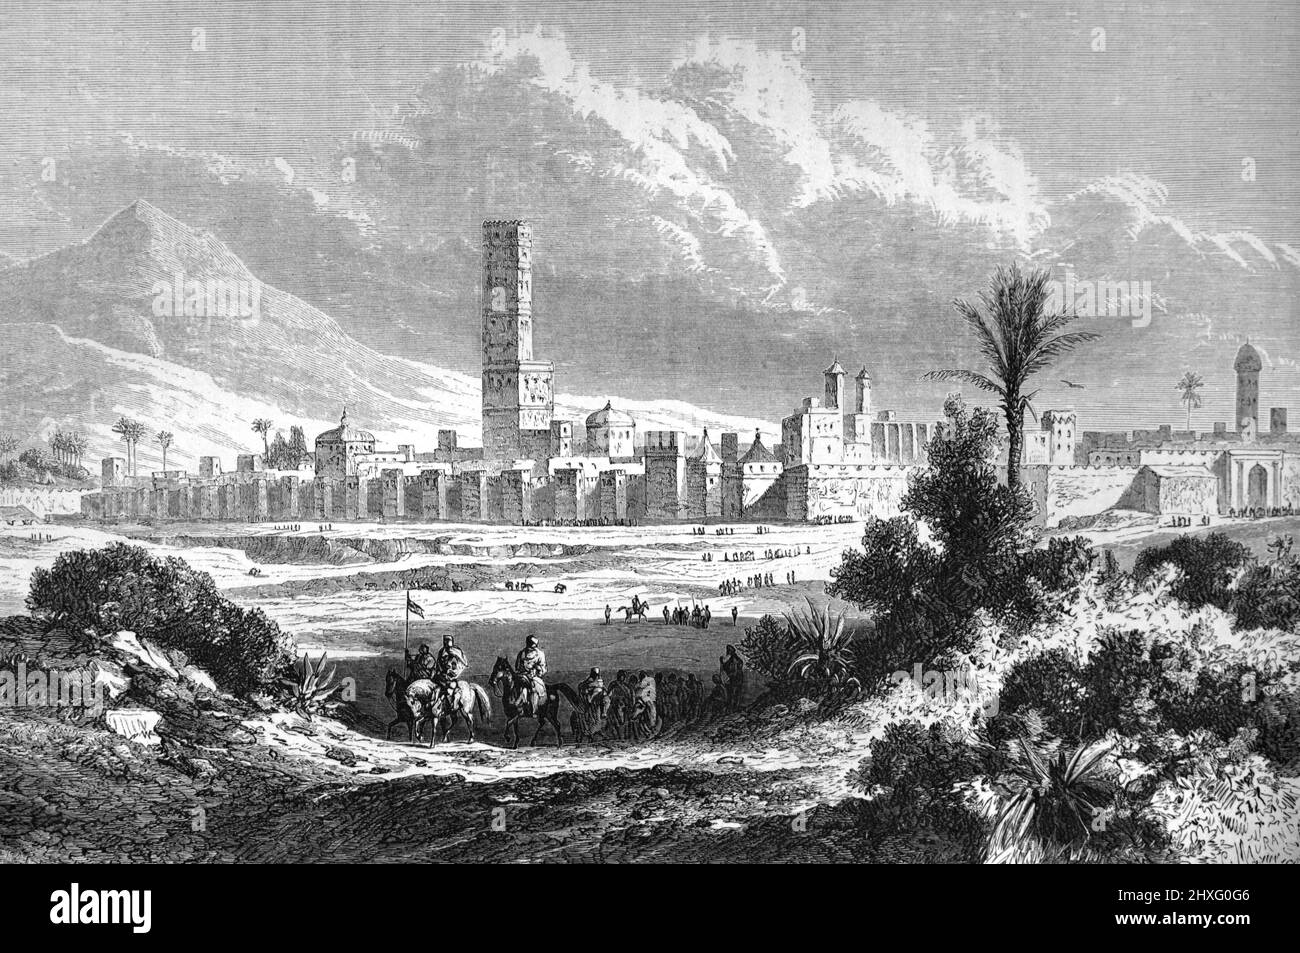 Vue sur la ville fortifiée de Taroudant ou de Taroudant dans la vallée de la sous, au sud-est du Maroc. Illustration ancienne ou gravure 1860. Banque D'Images